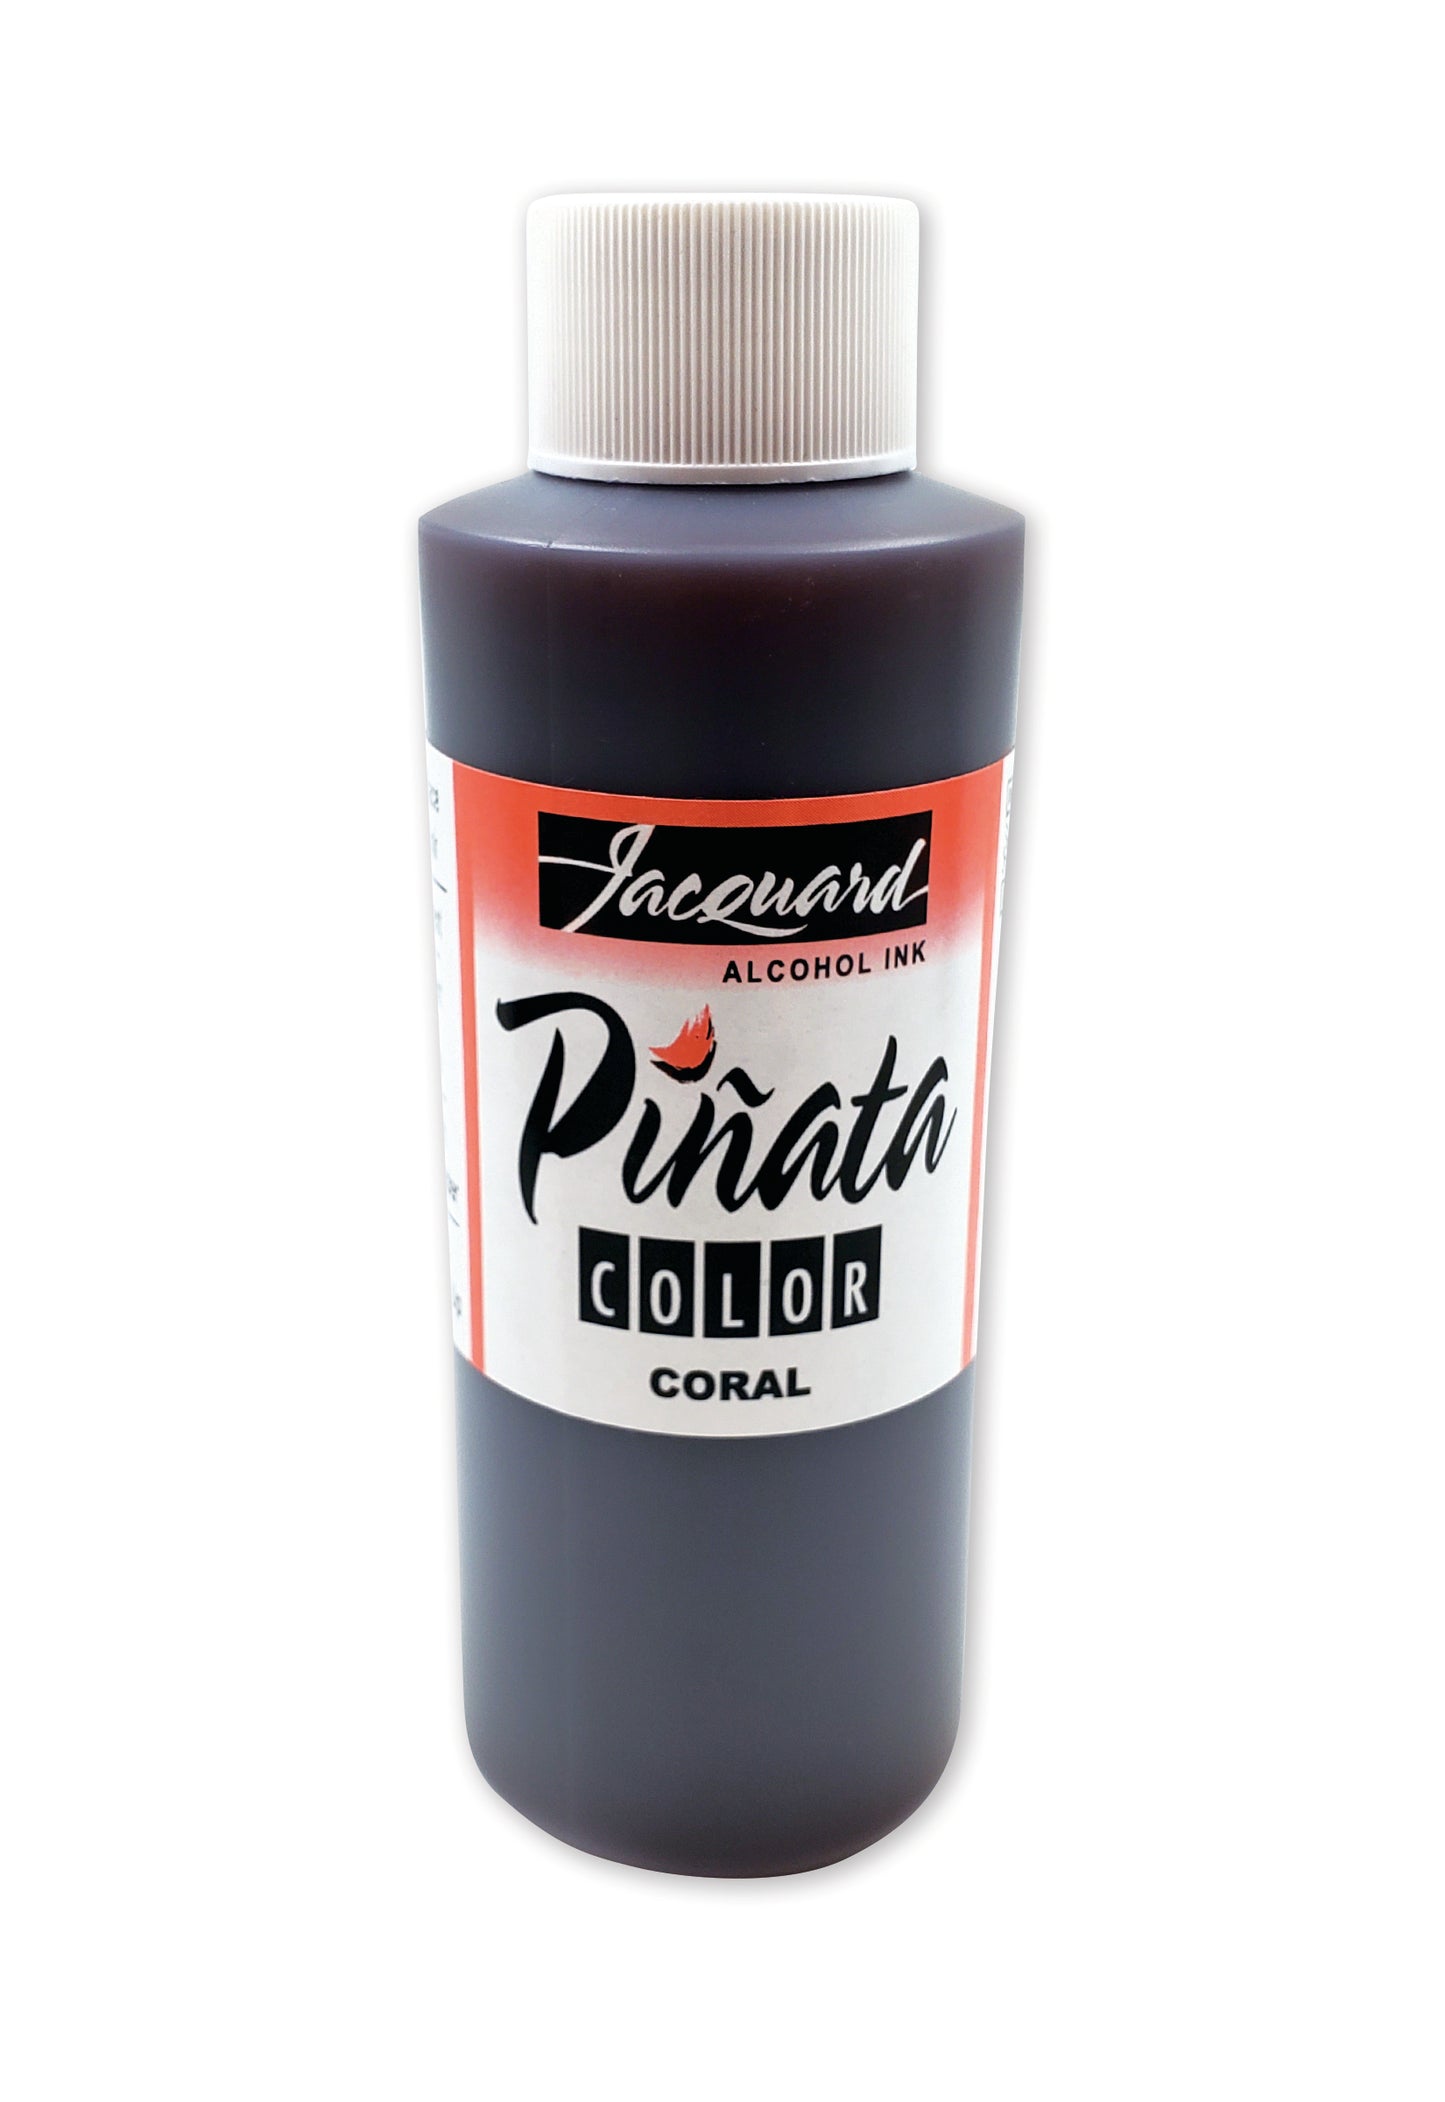 Piñata Alcohol Ink : Coral